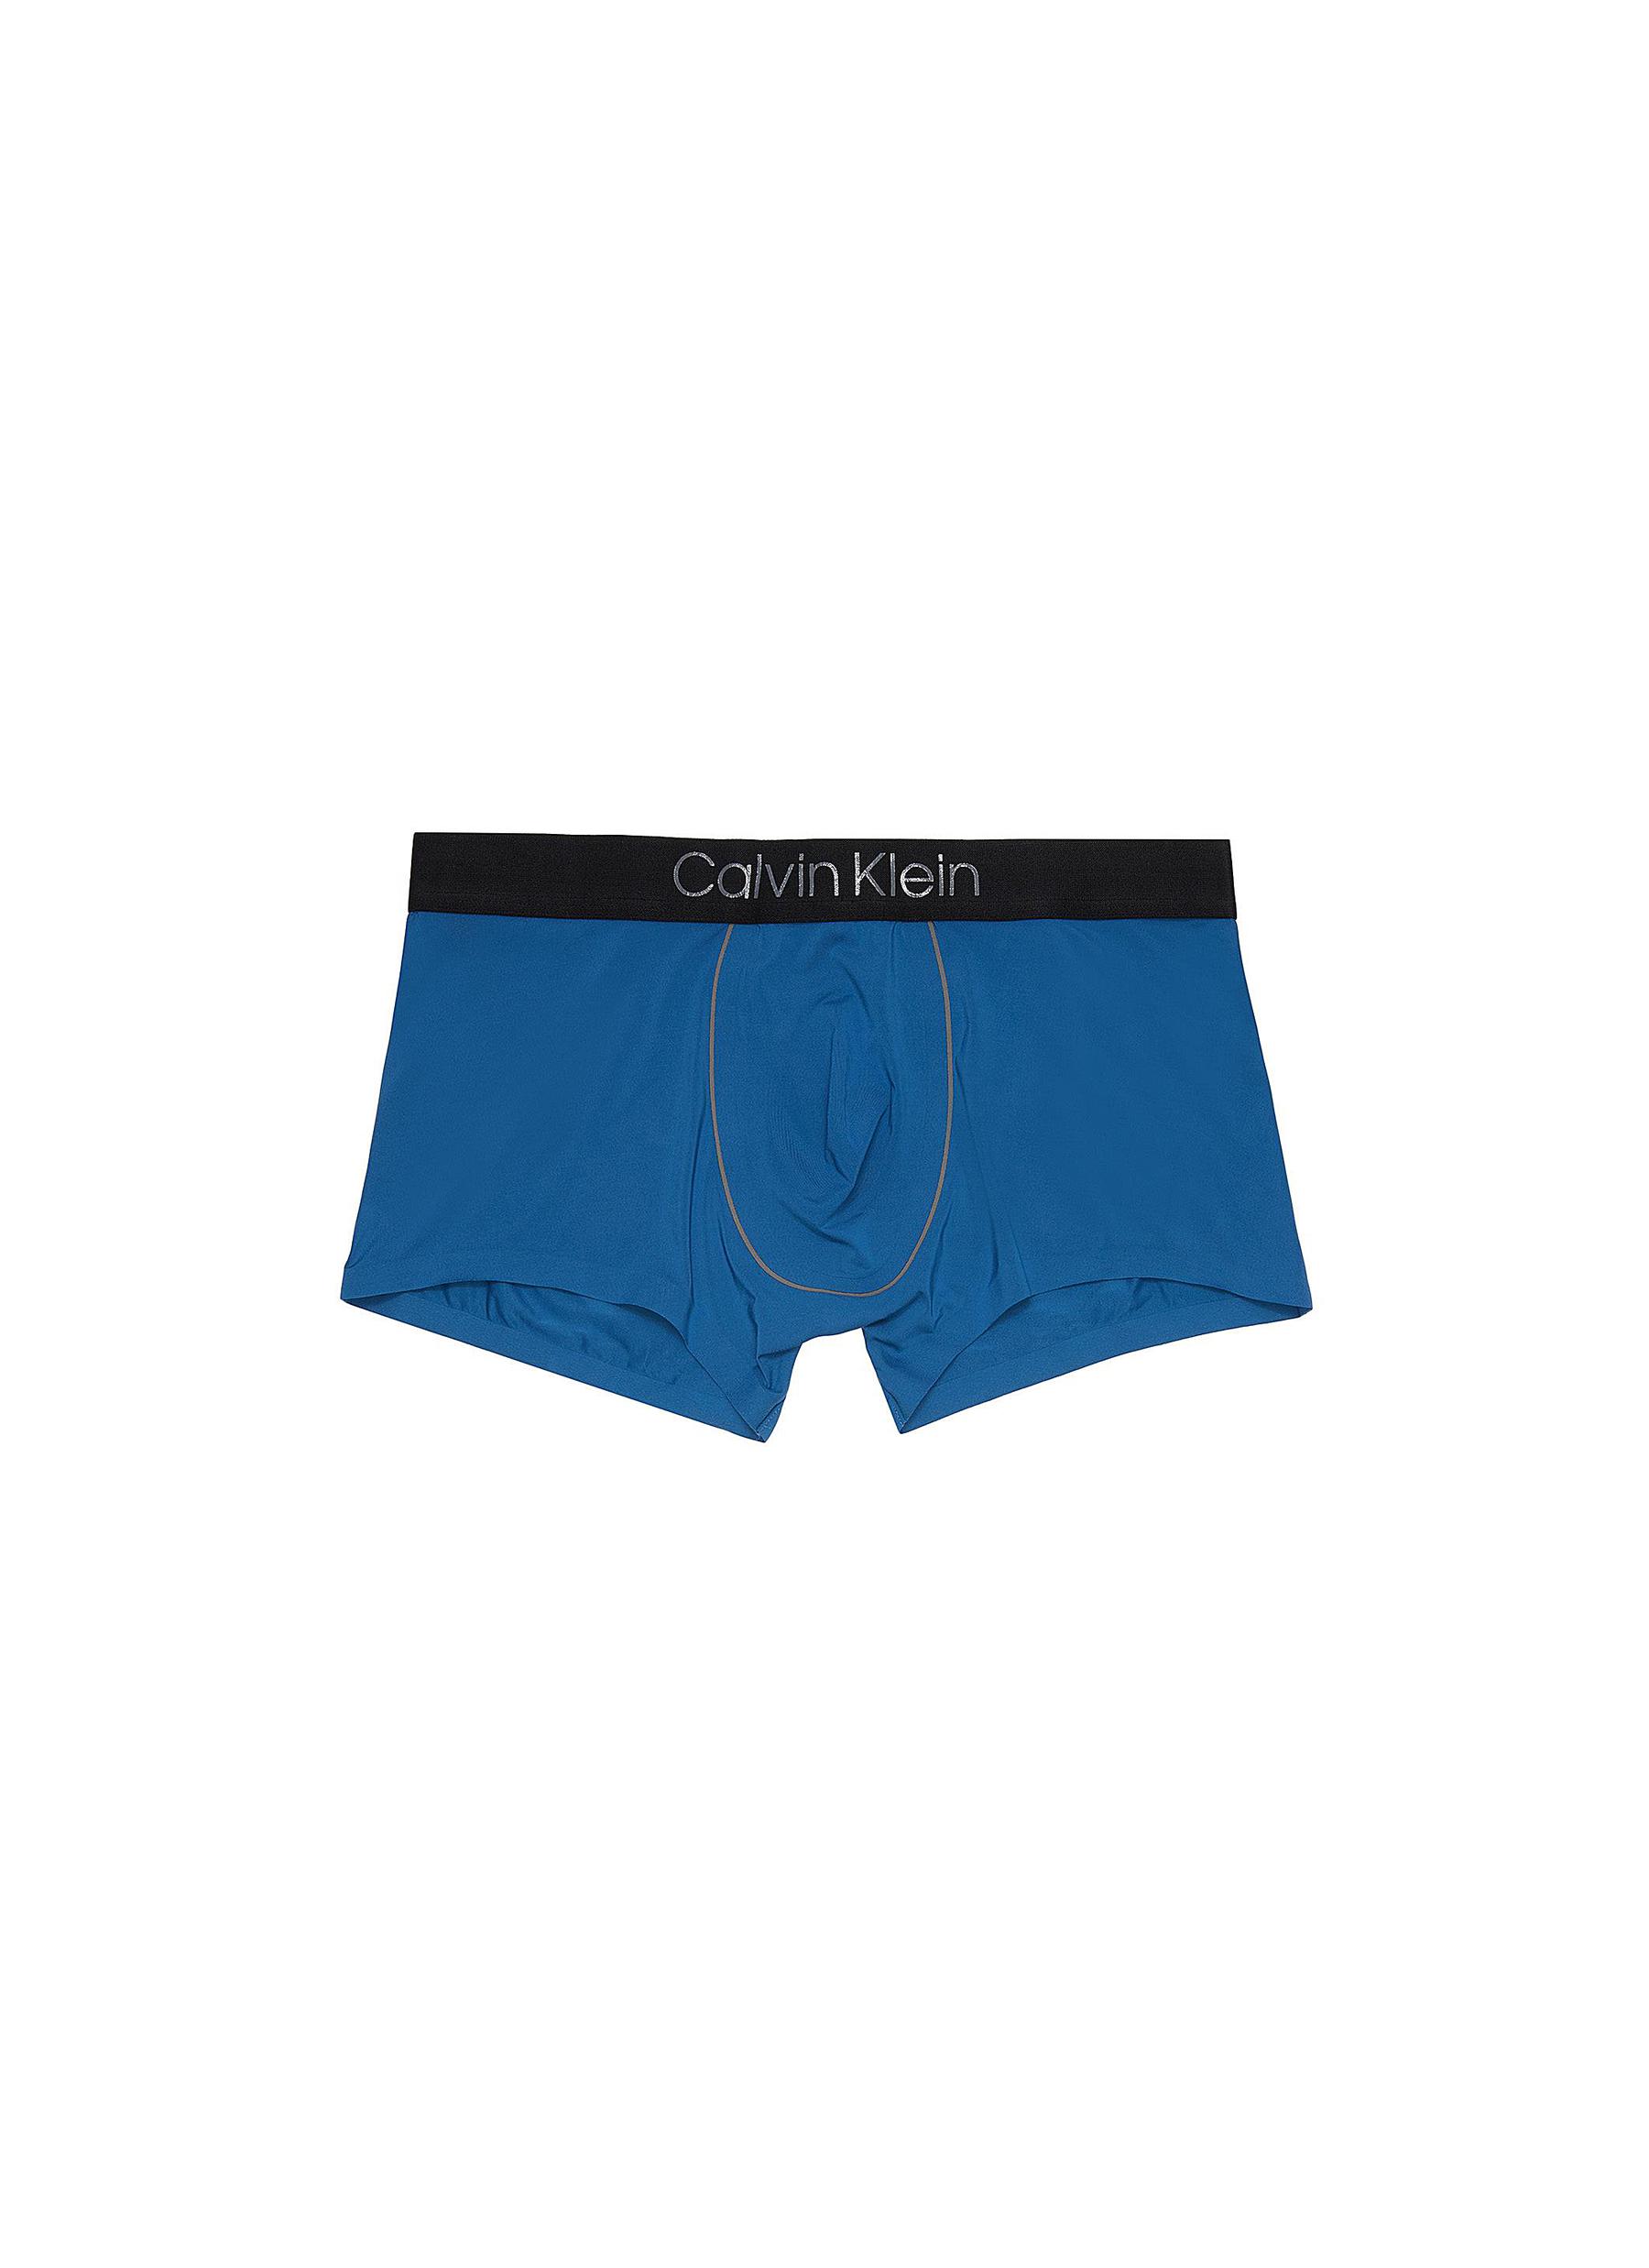 blue calvin klein underwear